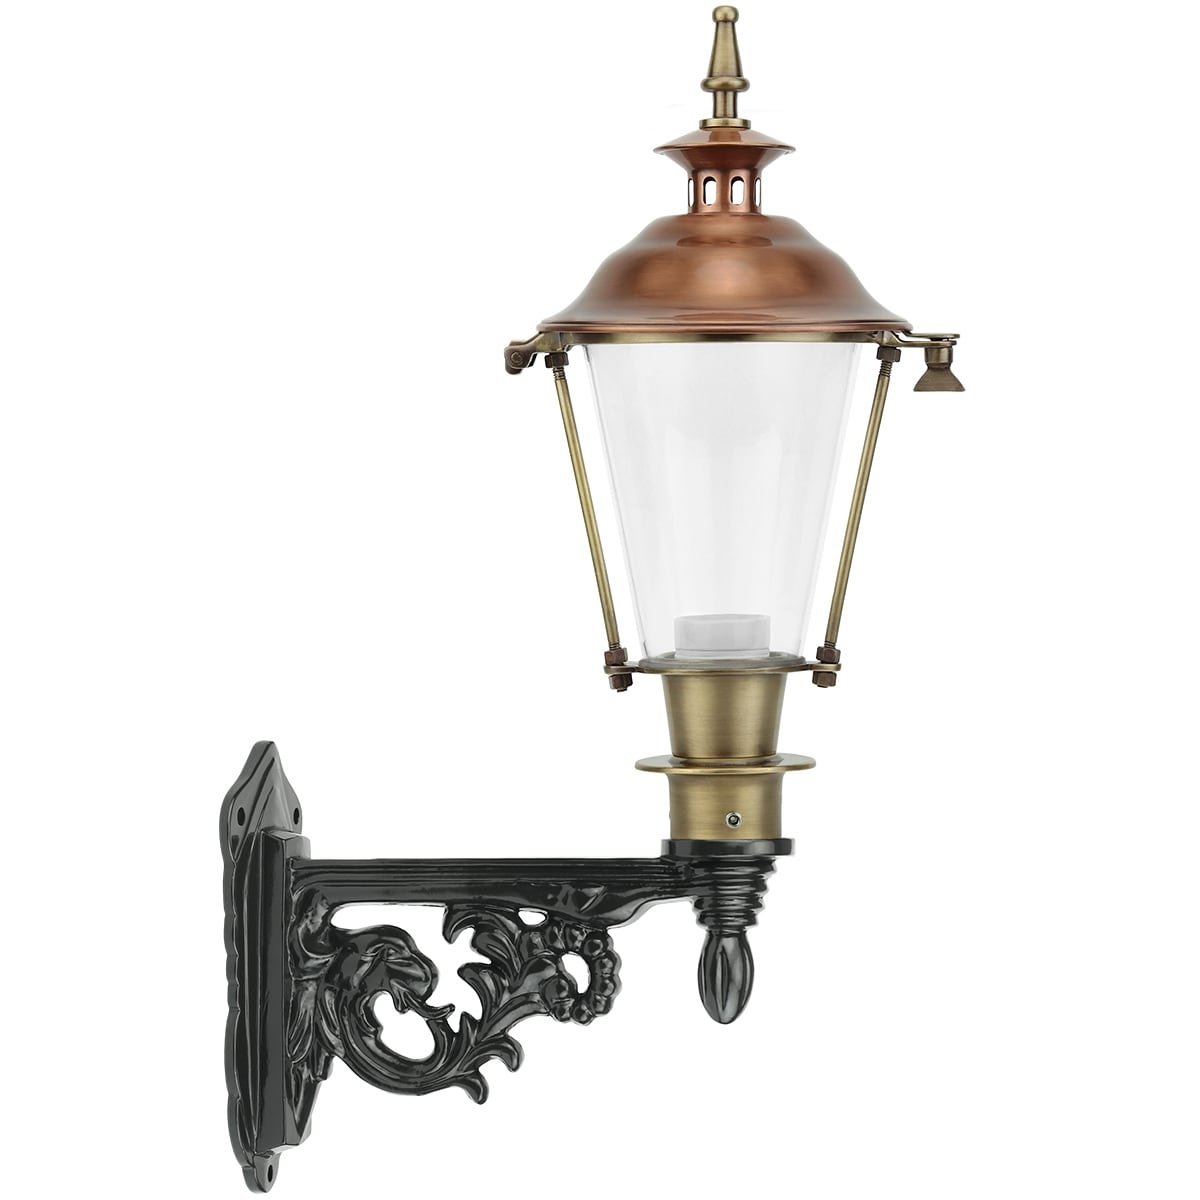 Buitenlampen Klassiek Landelijk Lampje schutting rond Geulhem brons - 55 cm